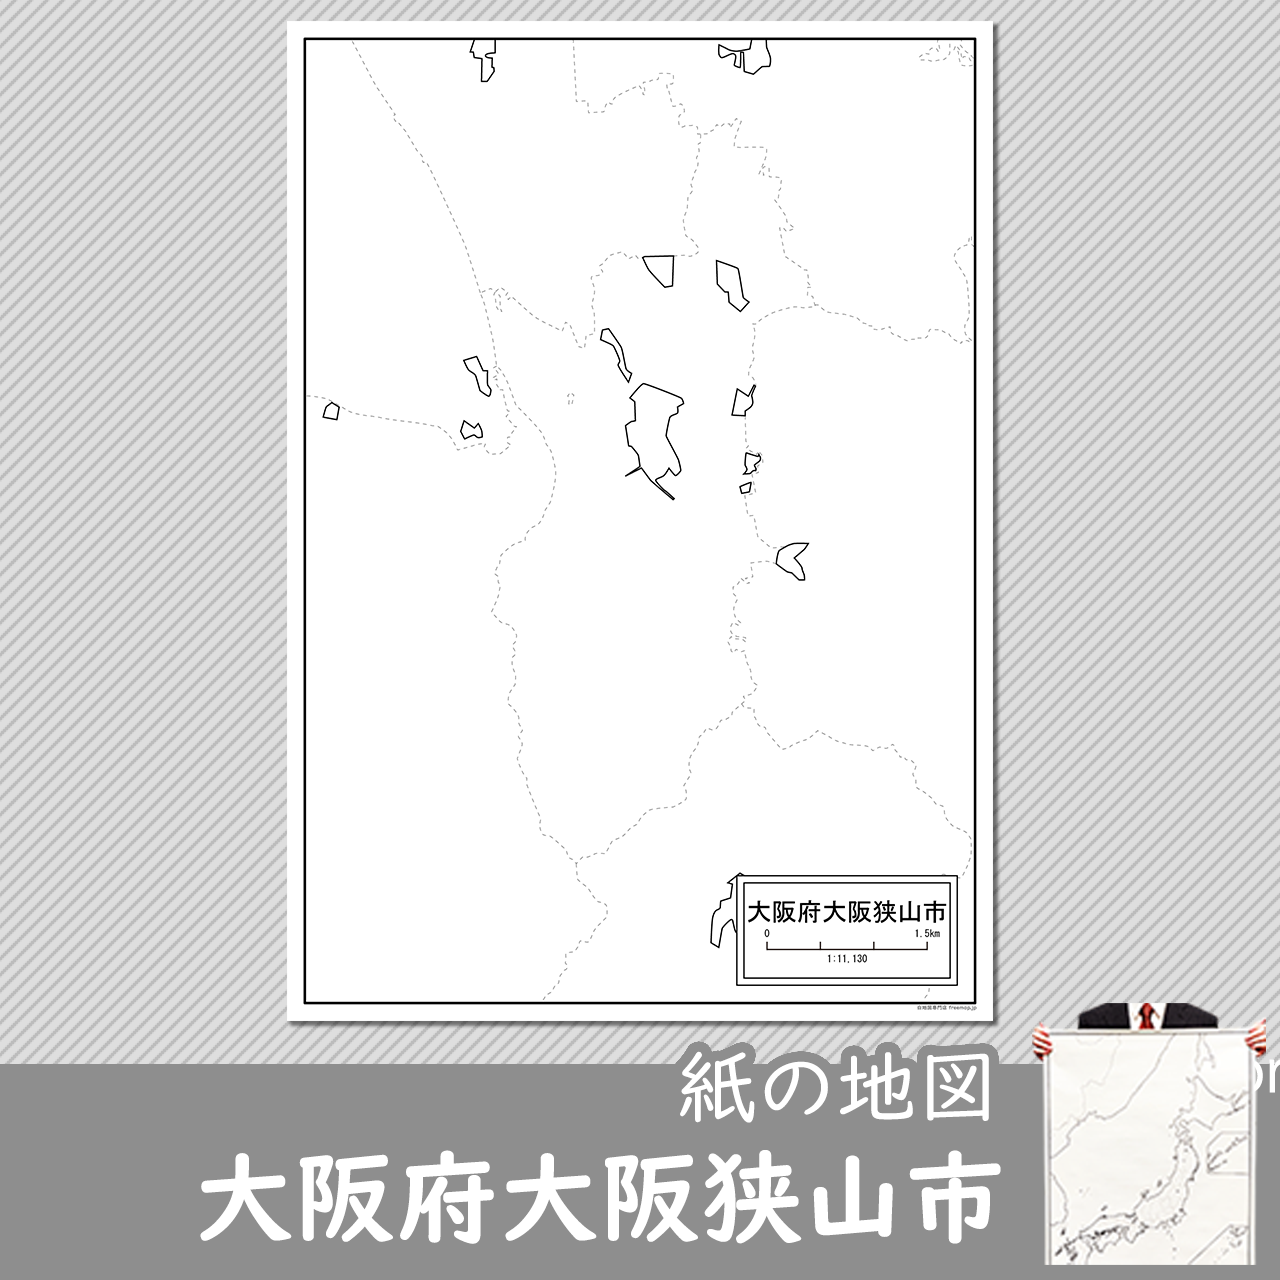 大阪府大阪狭山市の紙の白地図